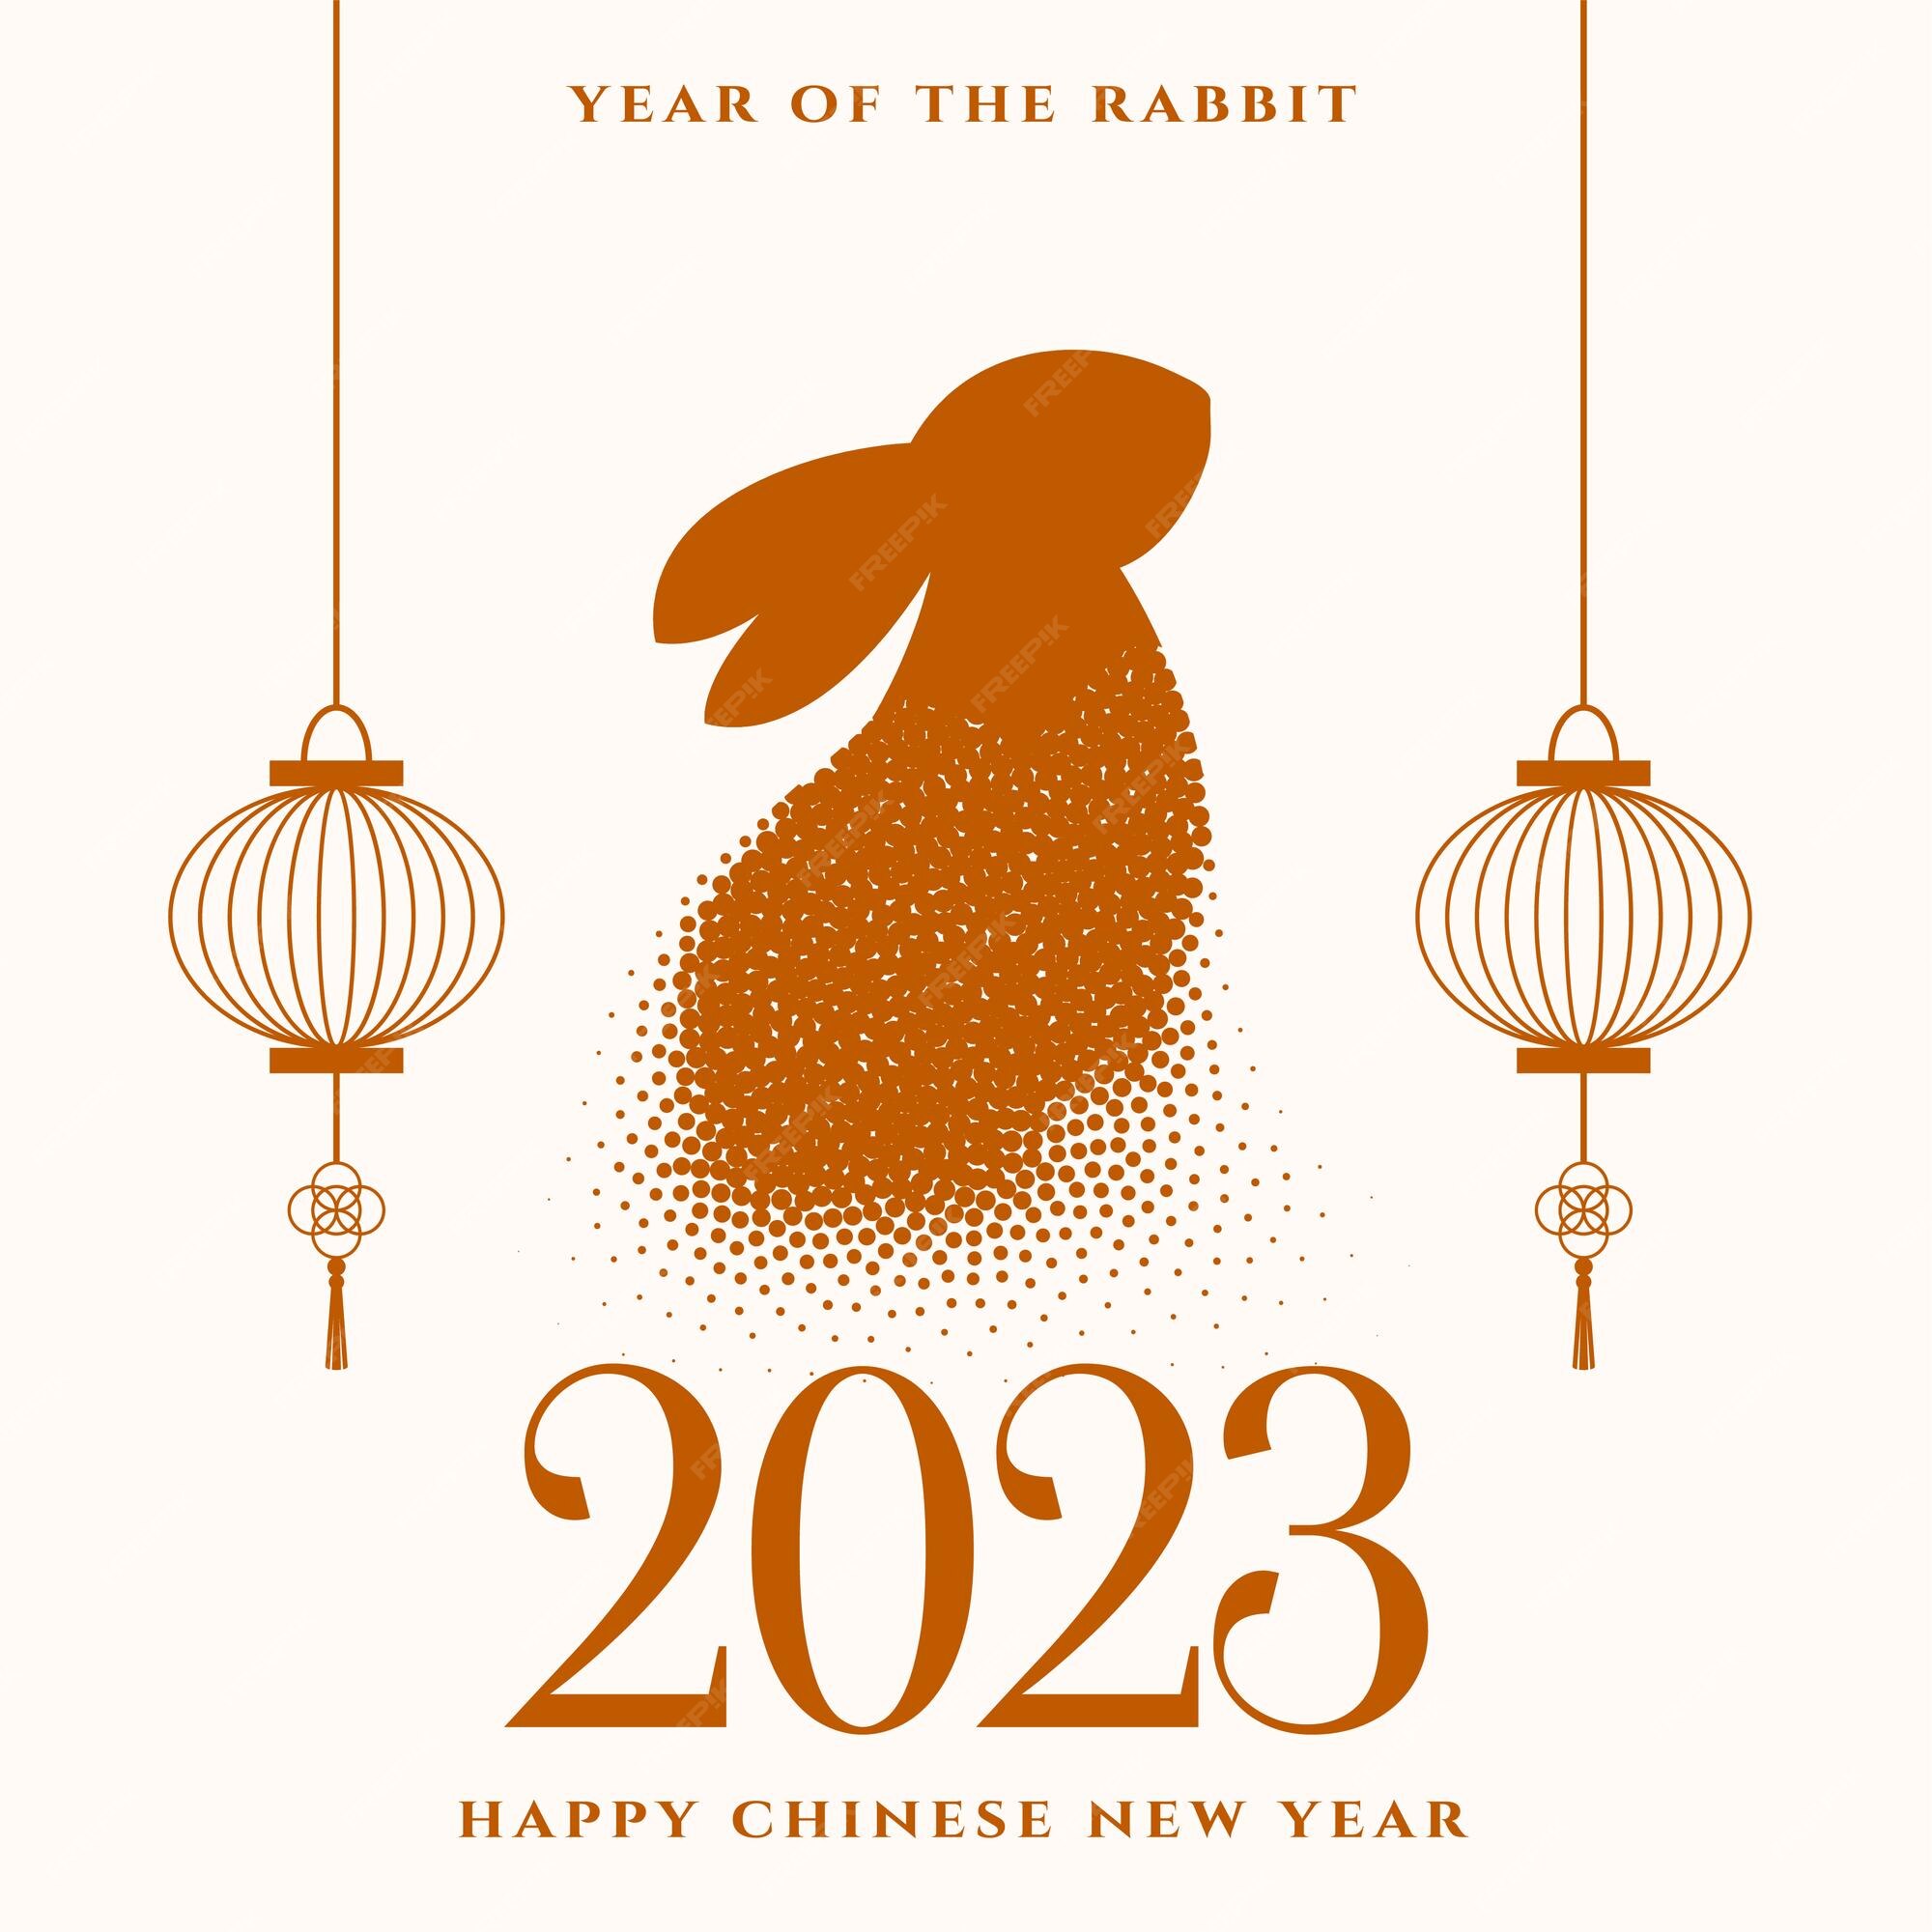 Tết Nguyên Đán Chinese New Year 2024: Hãy cùng khám phá những hình ảnh đón Tết Nguyên Đán 2024 với những con vật tượng trưng cho năm mới hoàn toàn mới lạ và độc đáo. Những hình ảnh tuyệt đẹp này sẽ mang lại cho bạn nét đẹp đậm chất Á Đông, tạo nên không khí Tết đầy color để chào đón một năm mới tốt đẹp.